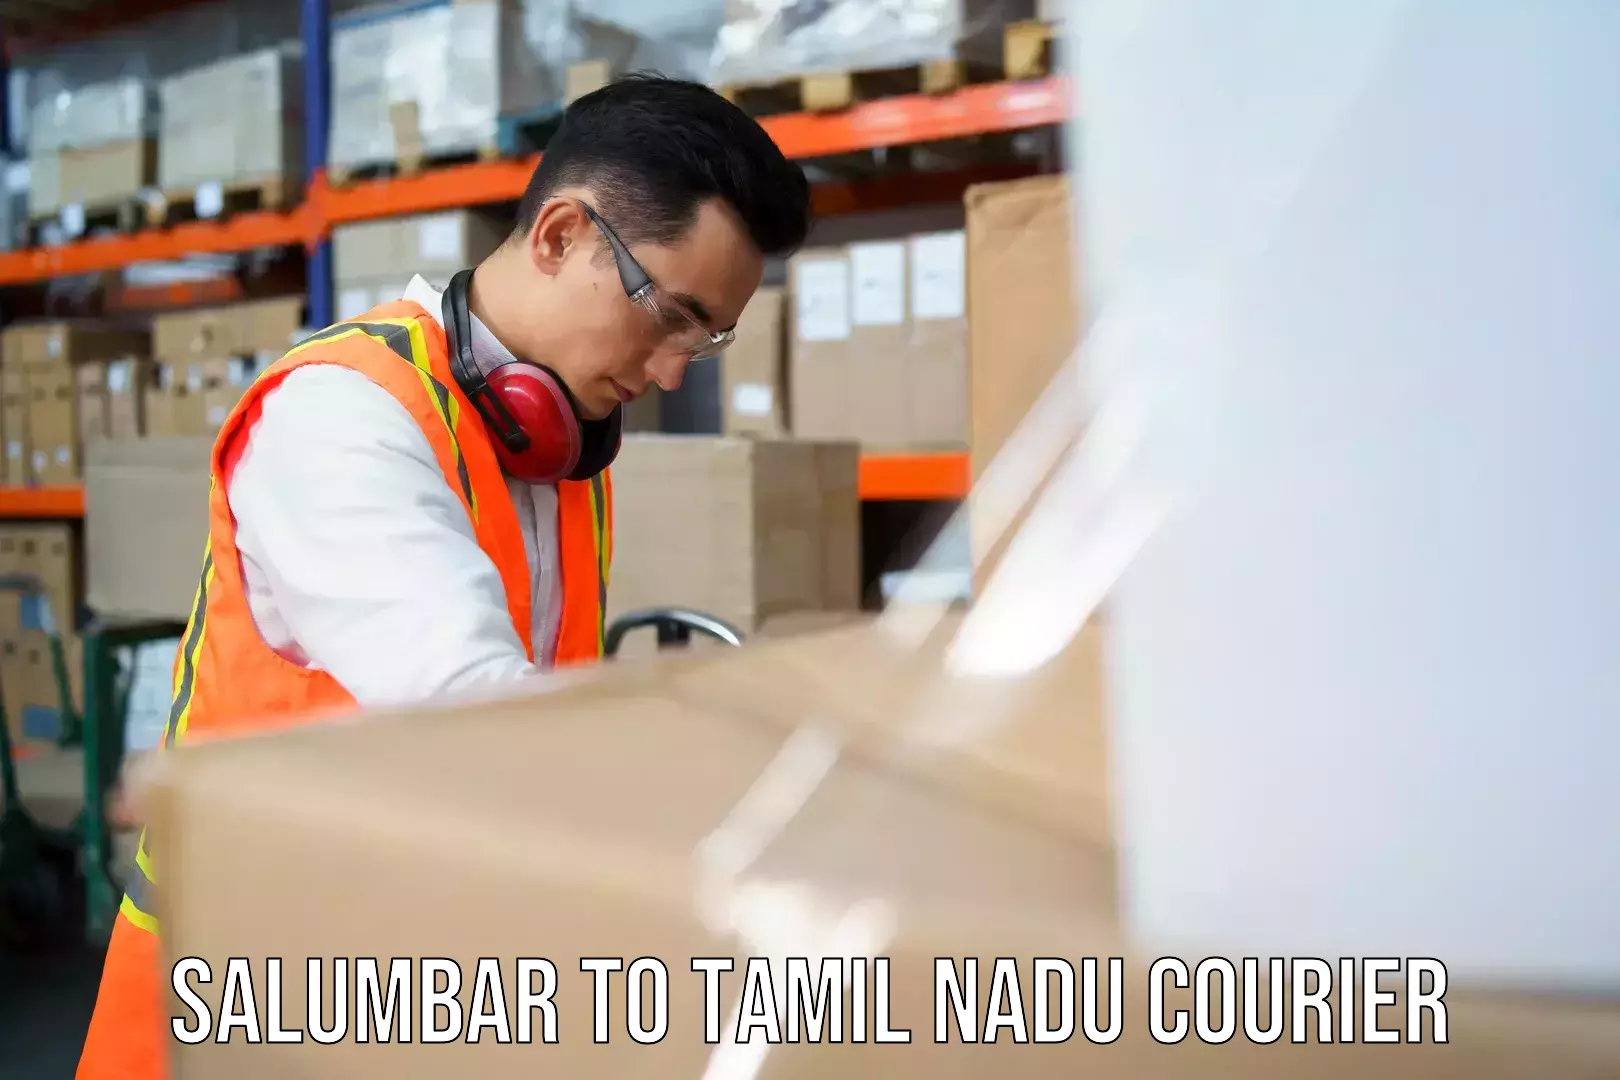 Express logistics service Salumbar to Tamil Nadu